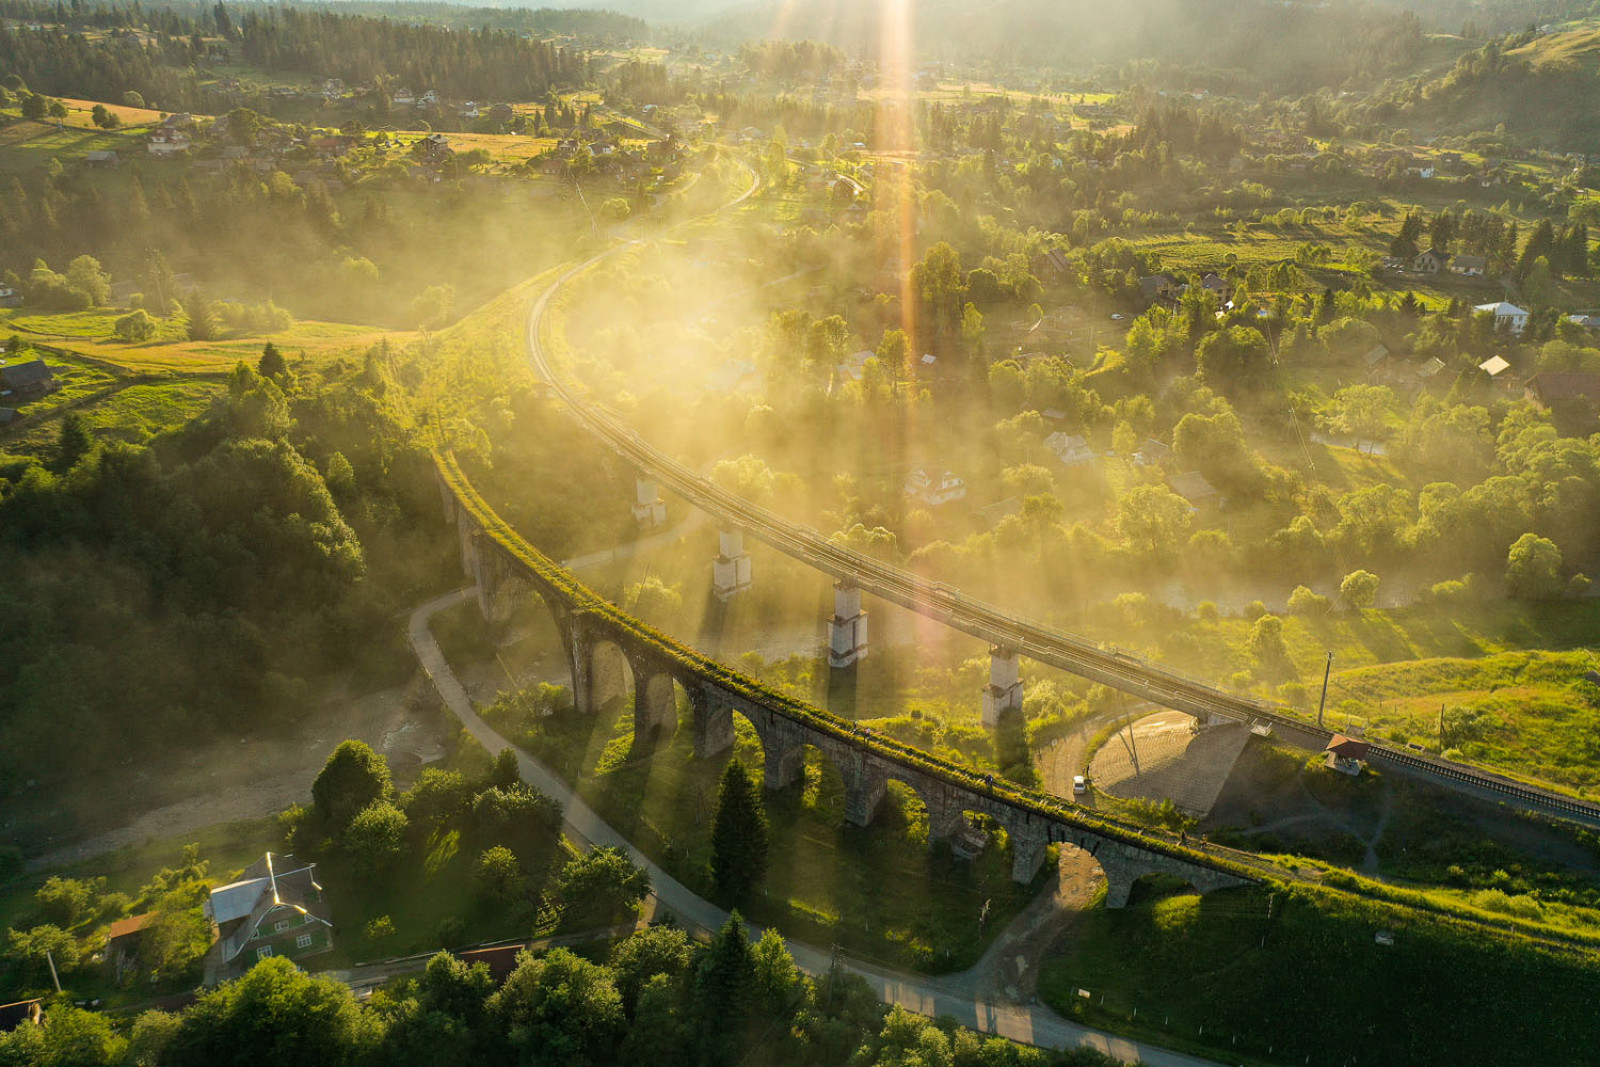 Віадук у Ворохті — кам’яний залізничний міст через річку Прут, побудований у 1895 році. З 2000 року не використовується для поїздок, заради його збереження поряд зведено міст-дублер. Фото: Богдан Сусол